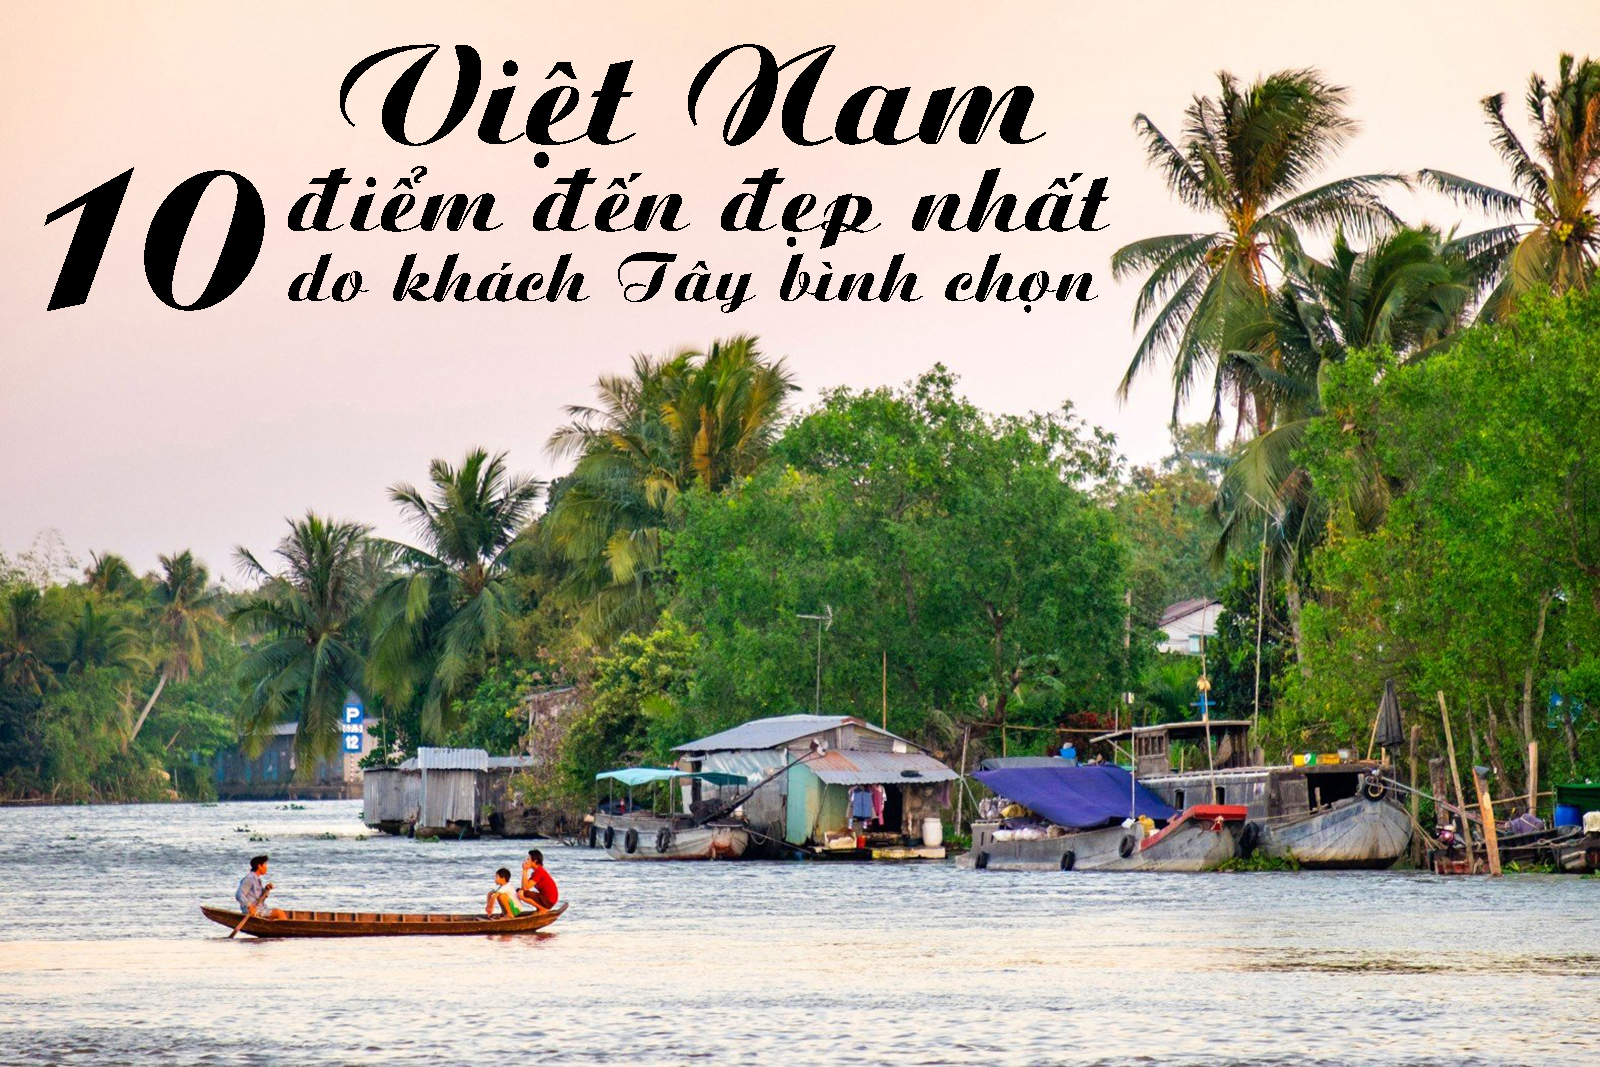 10 điểm đến đẹp nhất Việt Nam do khách Tây bình chọn - 1